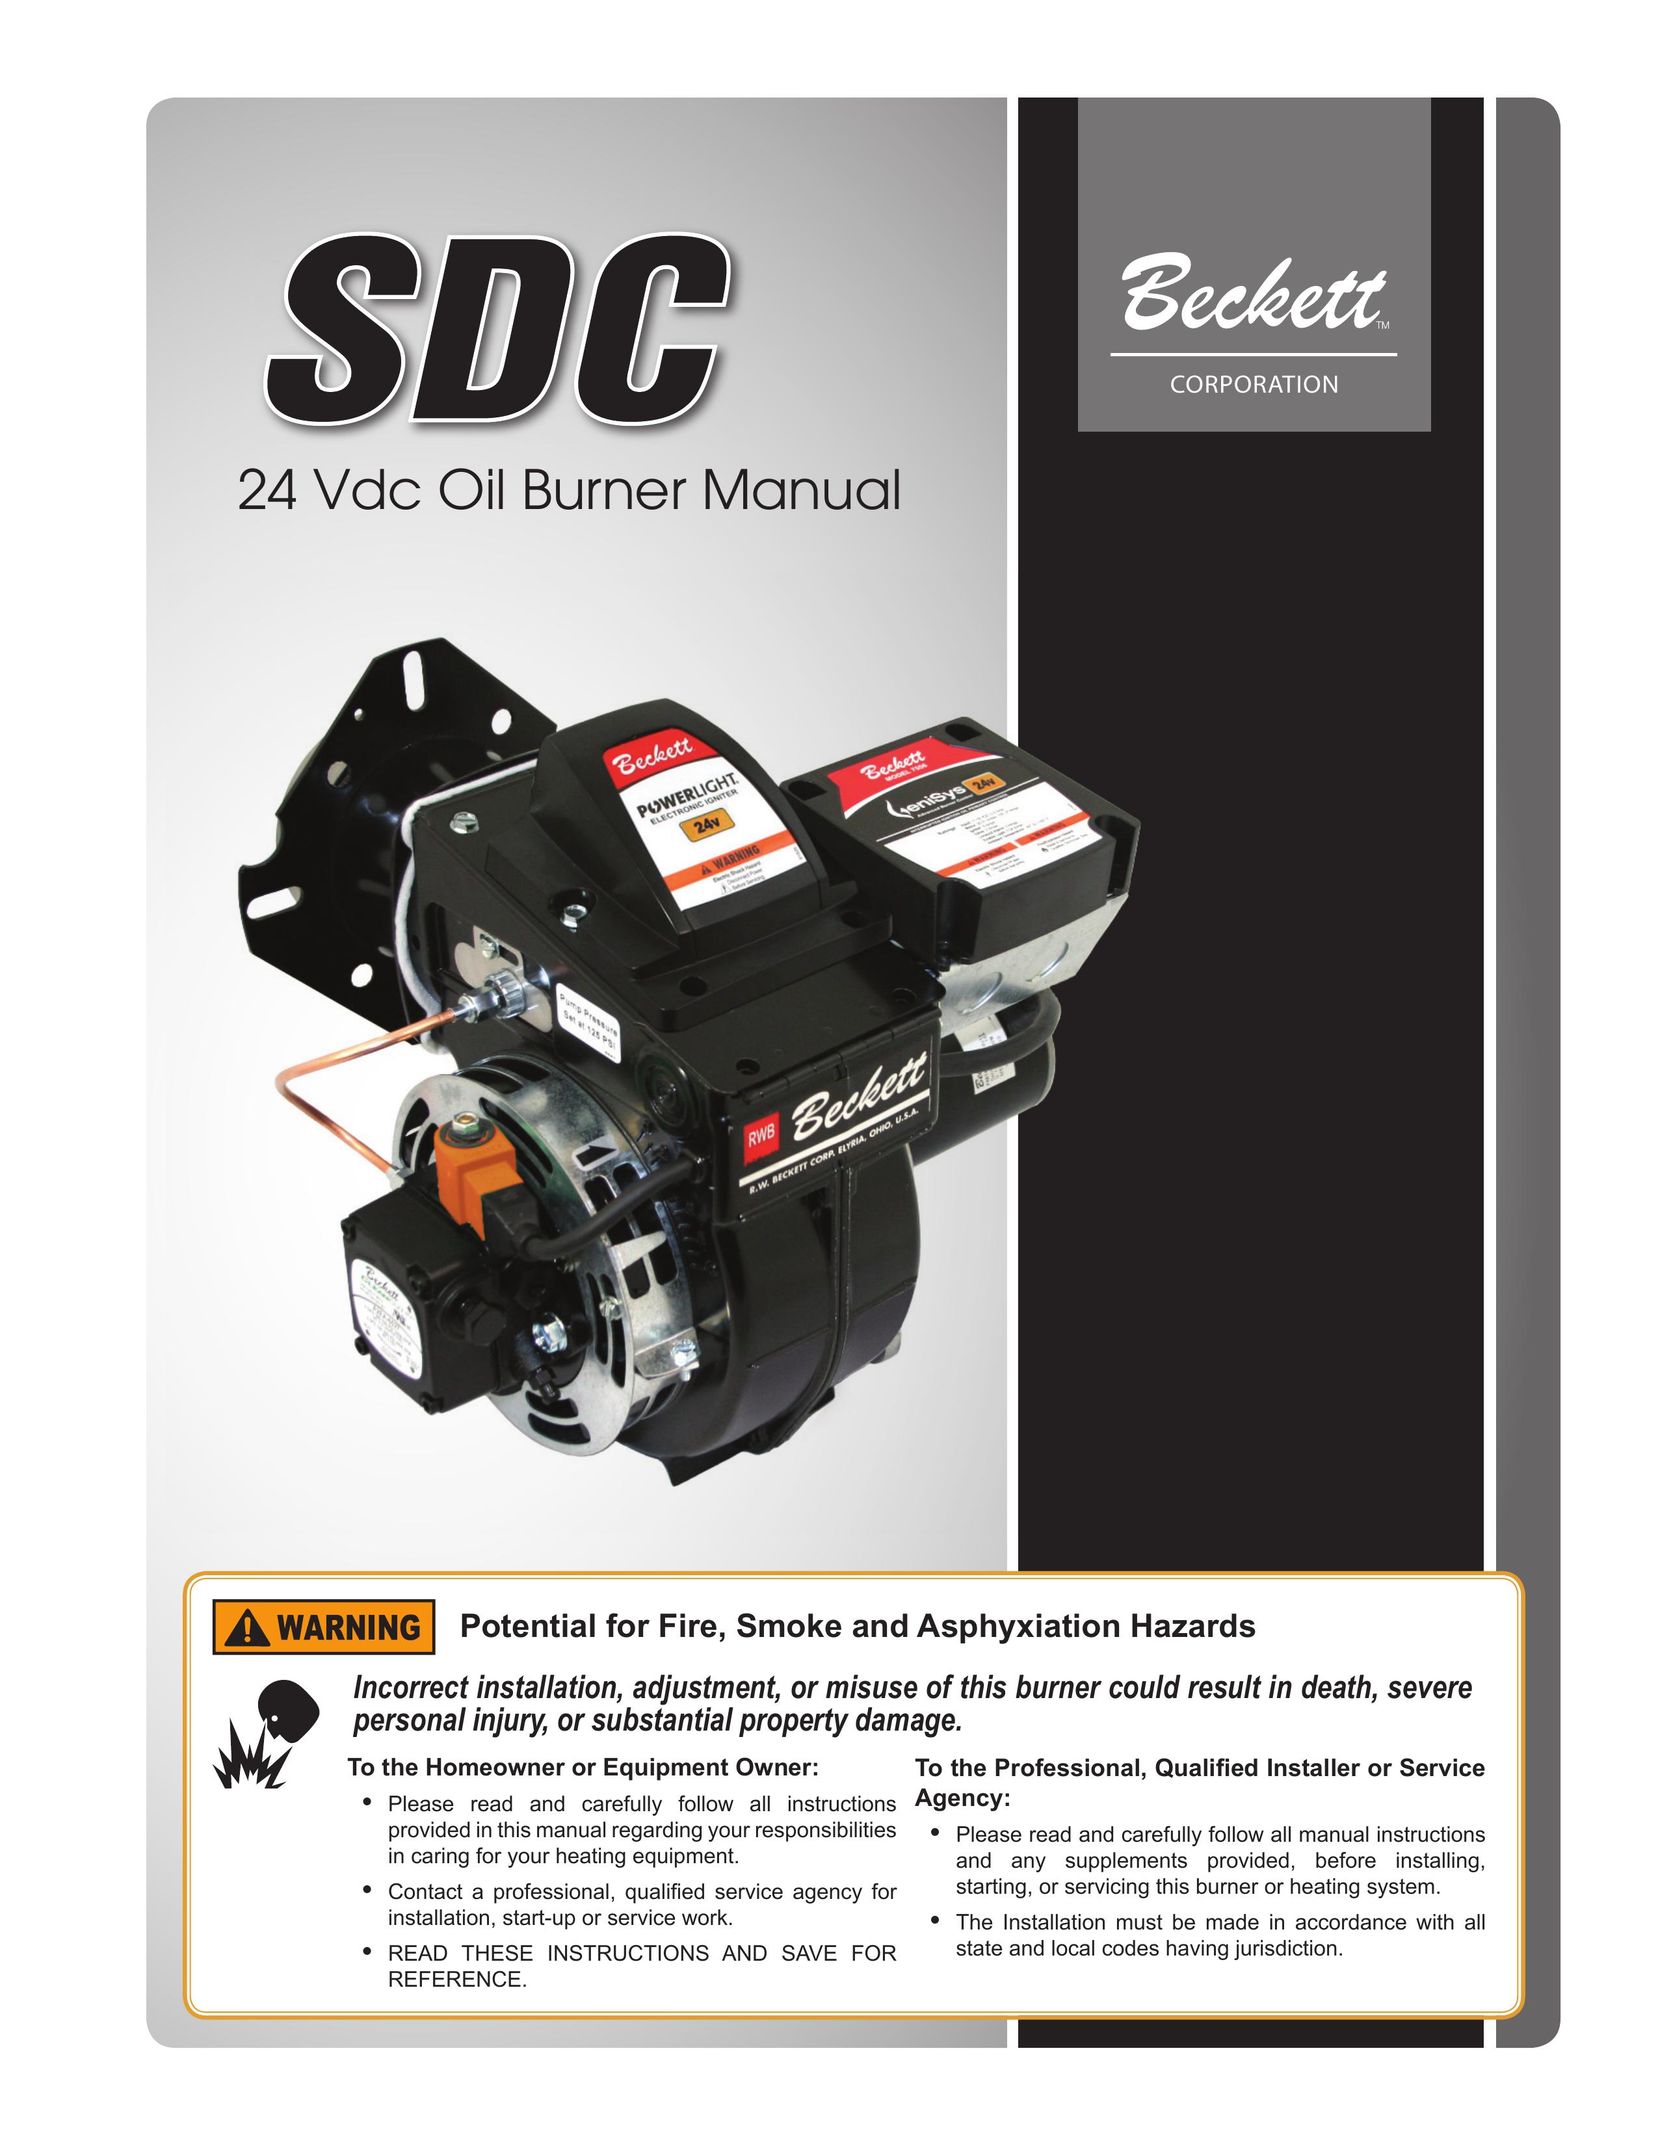 Beckett 24 VDC Burner User Manual